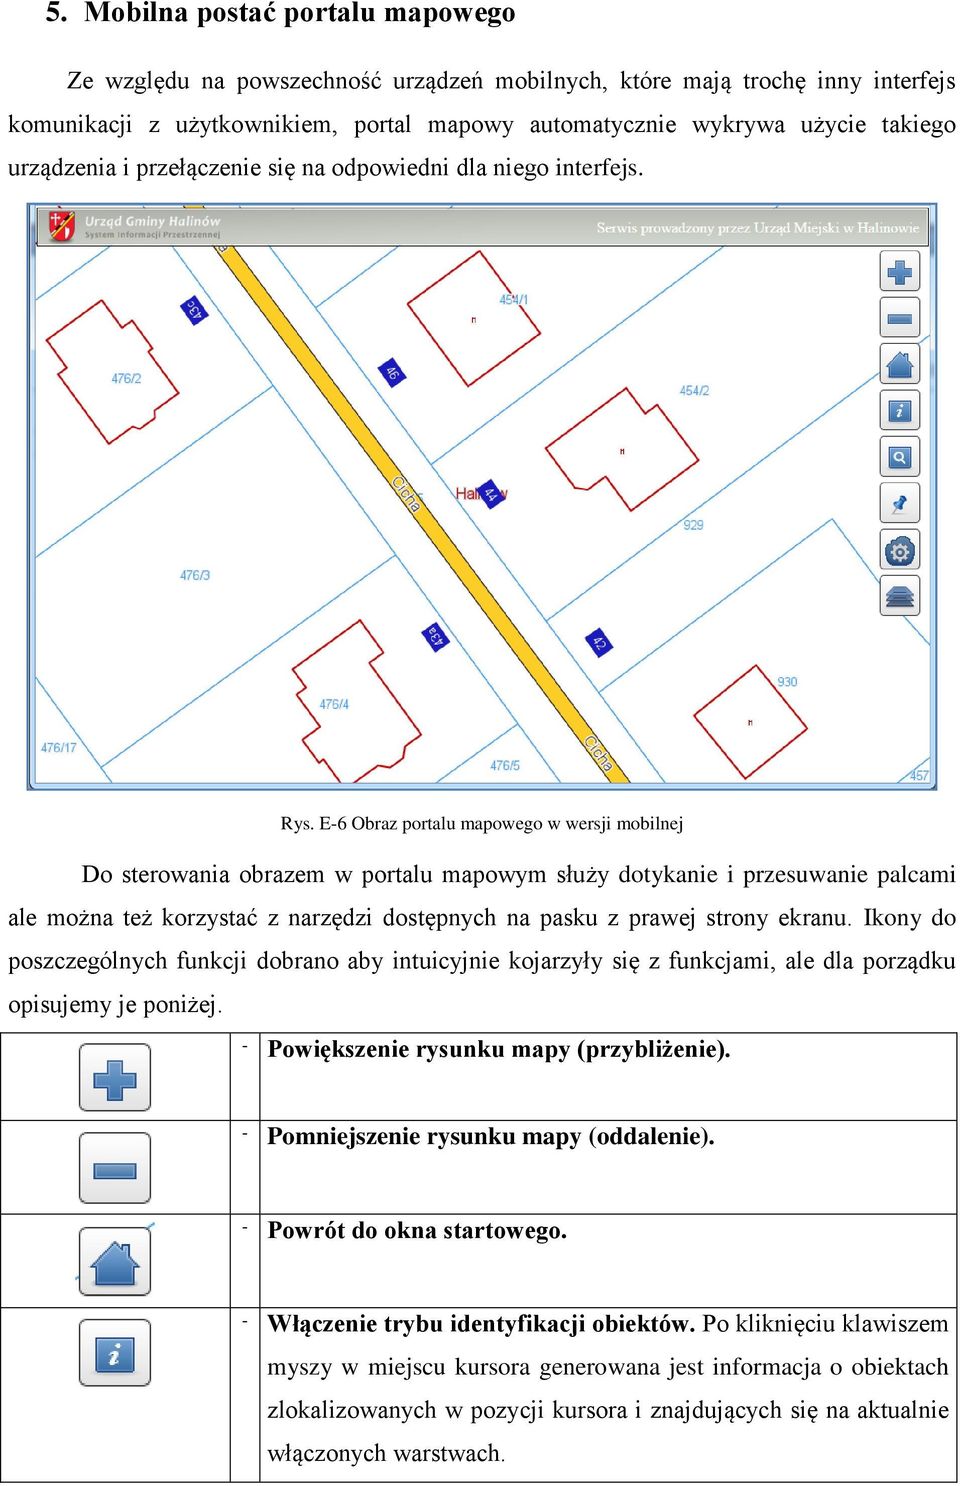 E-6 Obraz portalu mapowego w wersji mobilnej Do sterowania obrazem w portalu mapowym służy dotykanie i przesuwanie palcami ale można też korzystać z narzędzi dostępnych na pasku z prawej strony